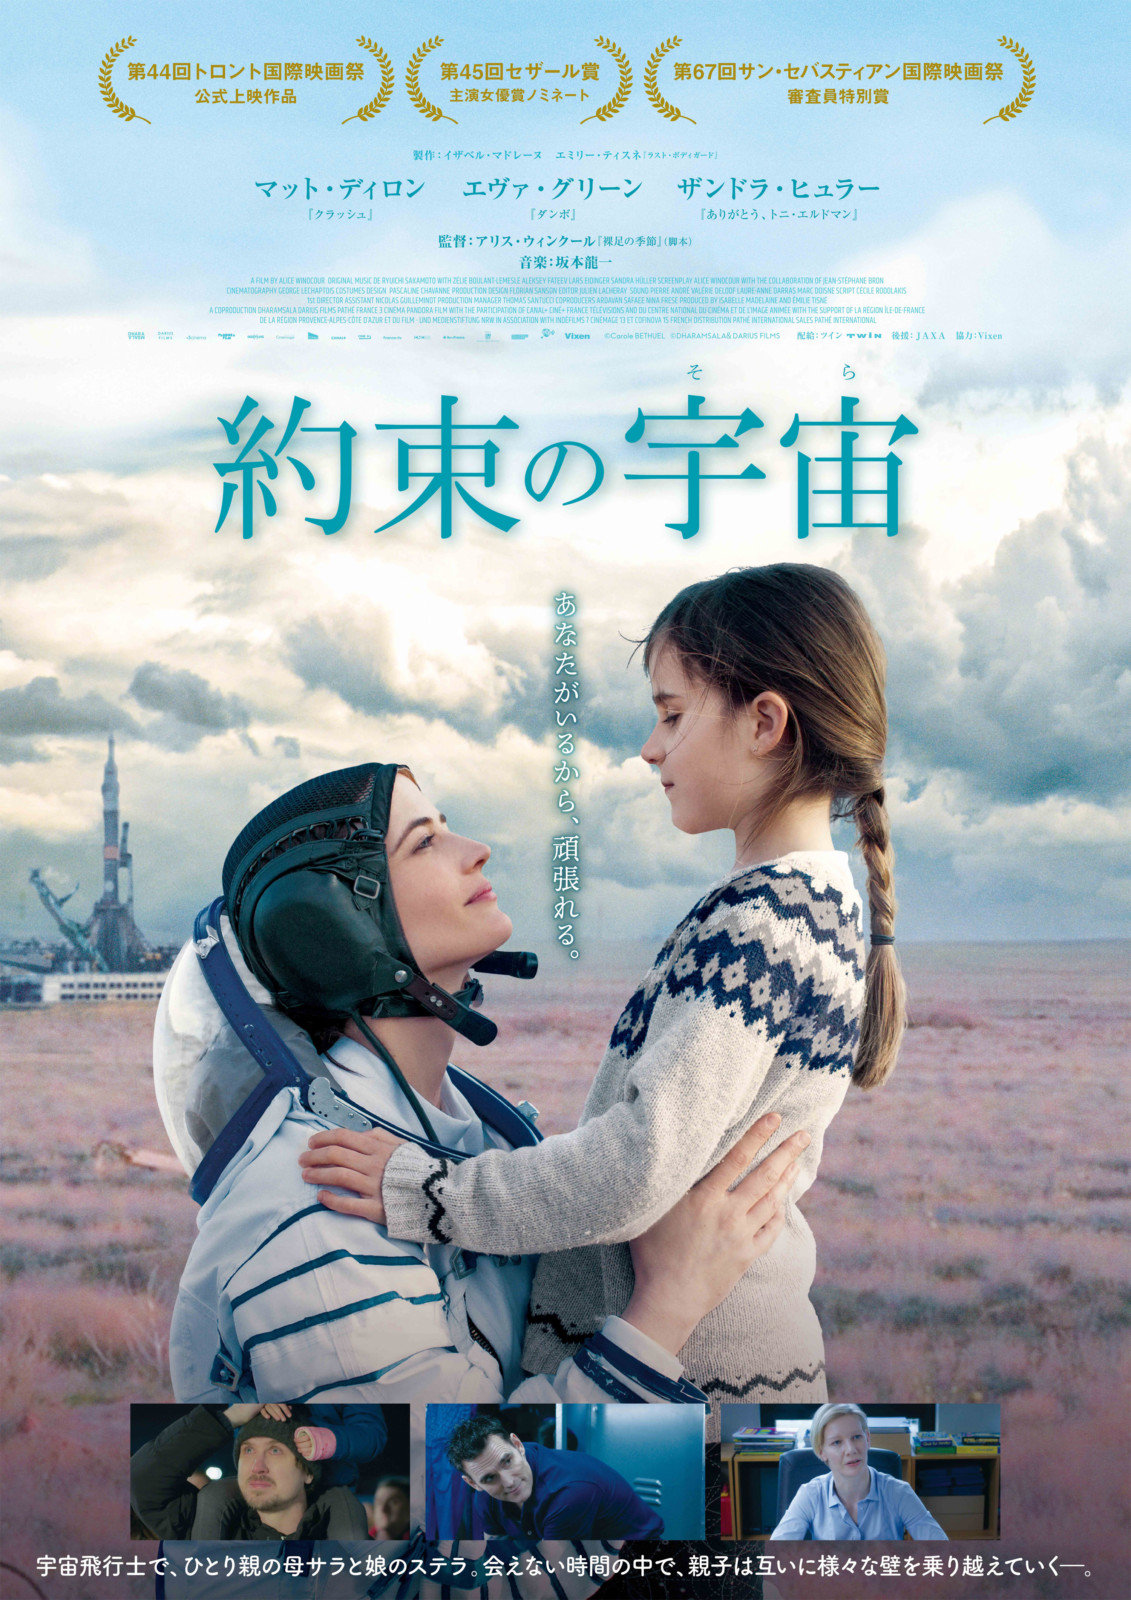 エヴァ・グリーン主演『約束の宇宙』2021年4月16日公開決定！日本版ポスターが解禁！